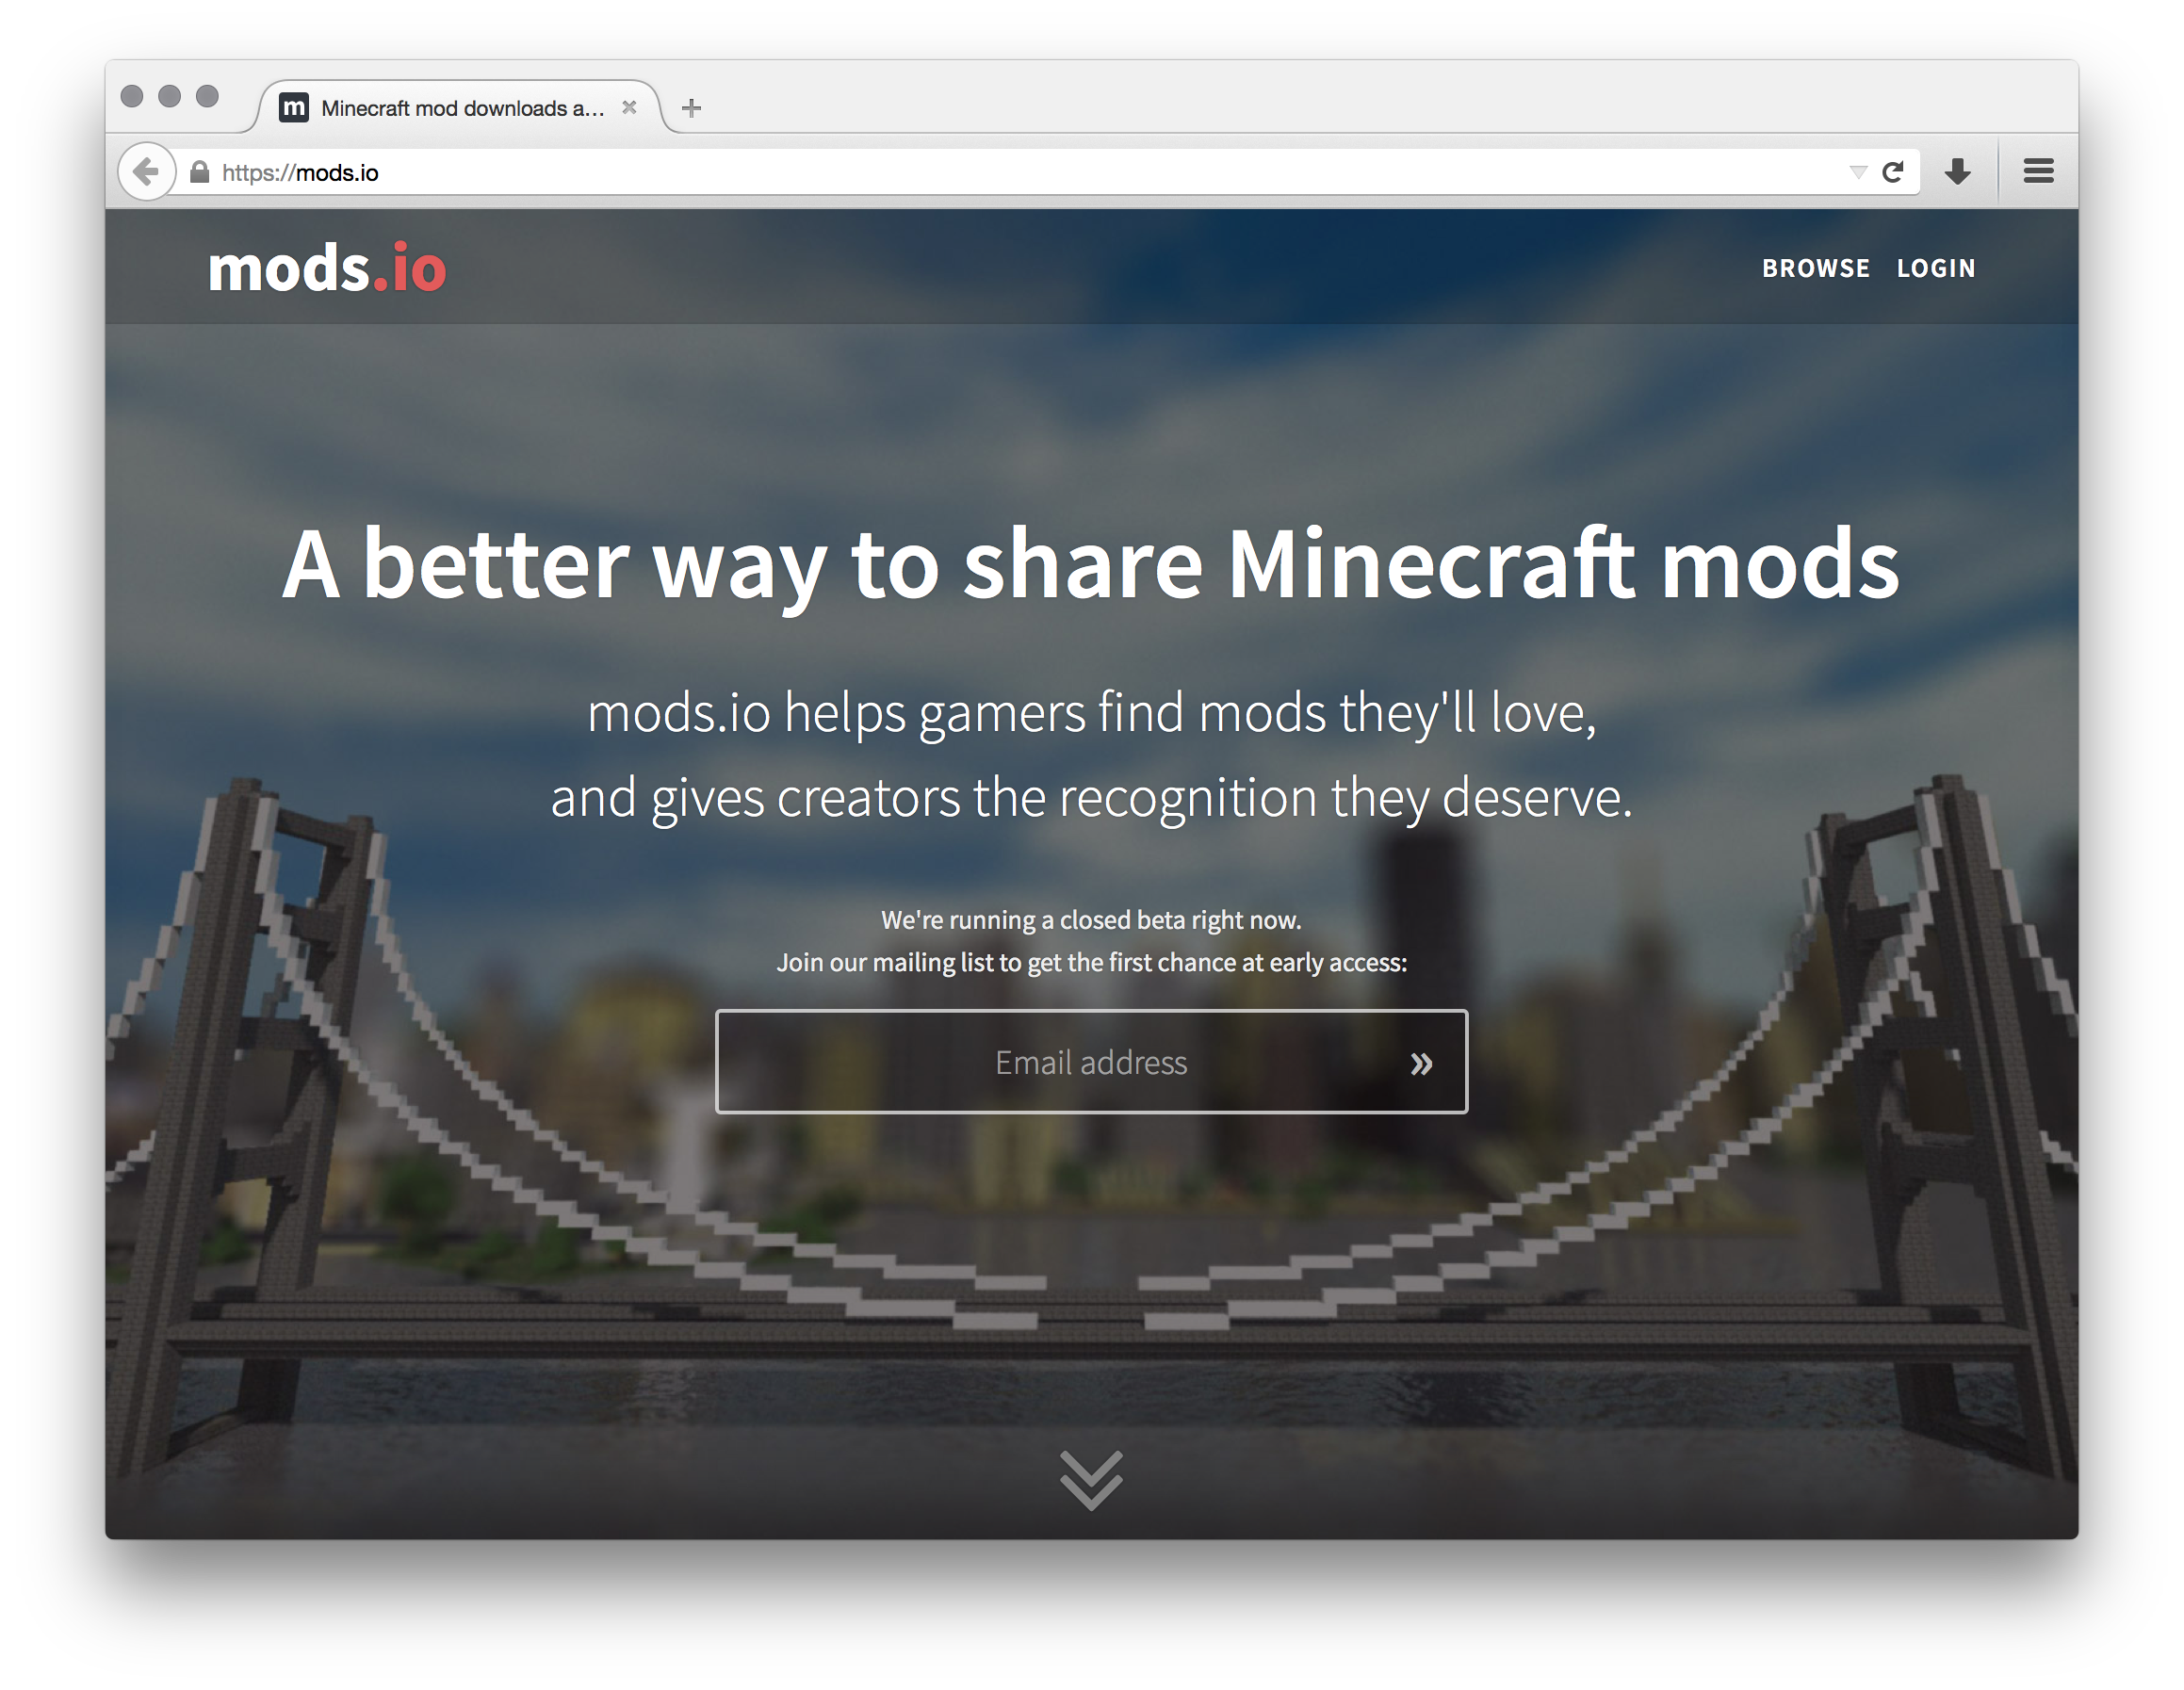 mods.io homepage